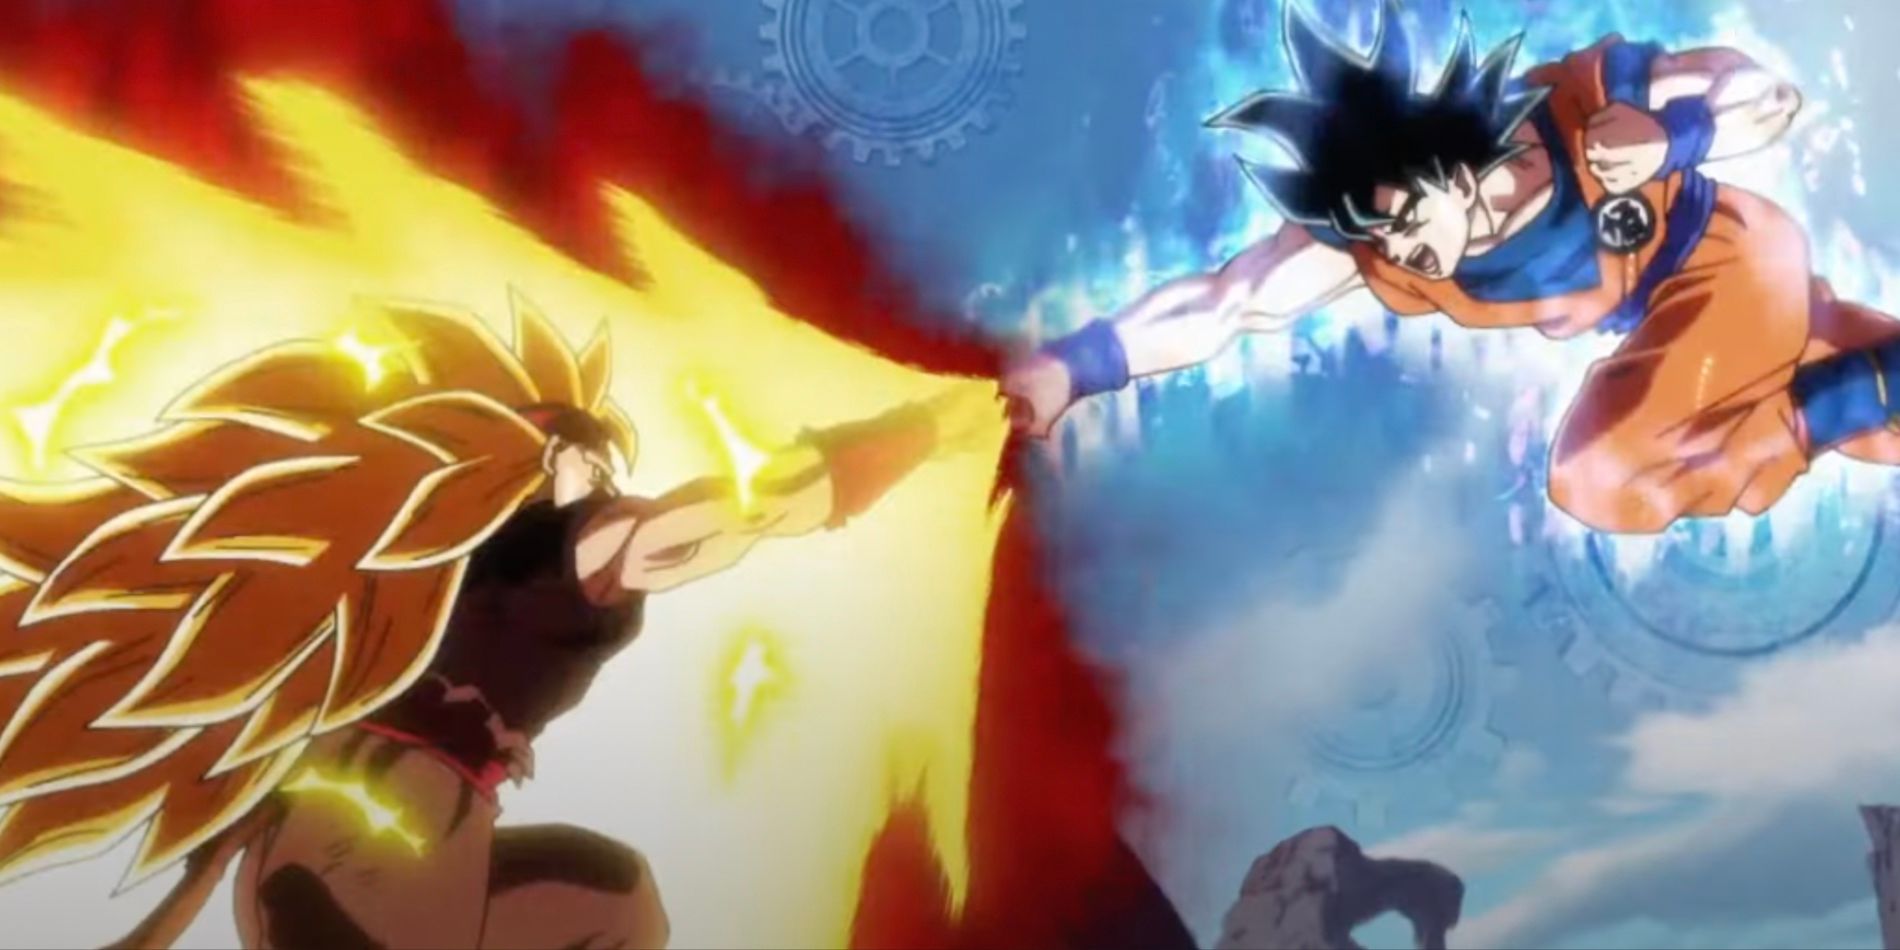 SS3 Xeno Bardock e Ultra Instinct Goku dão um soco em Super Dragon Ball Heroes.